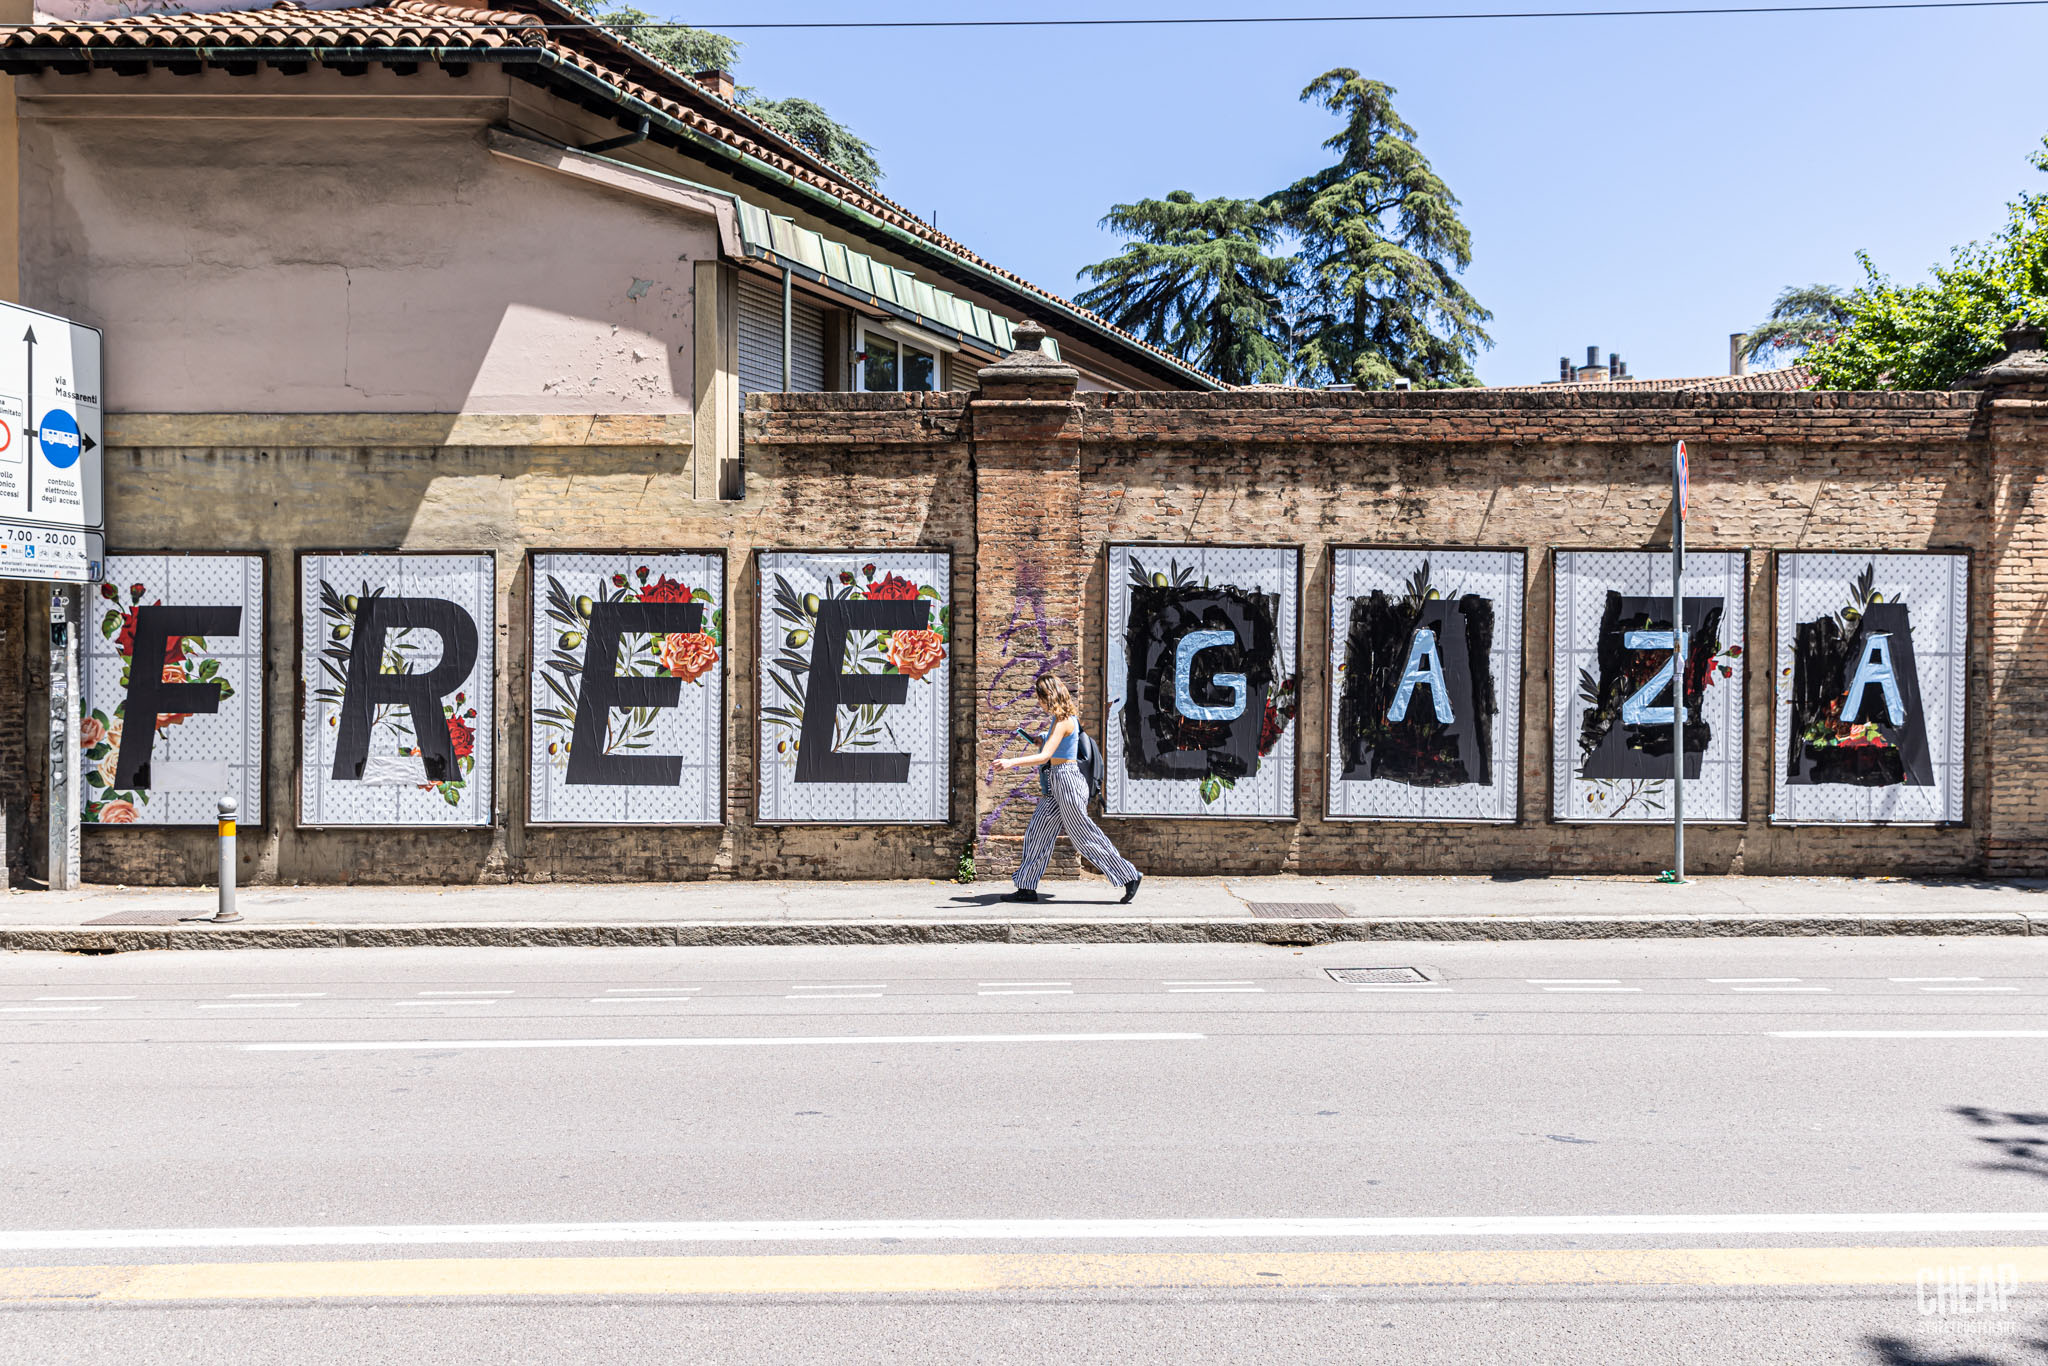 cheap free gaza